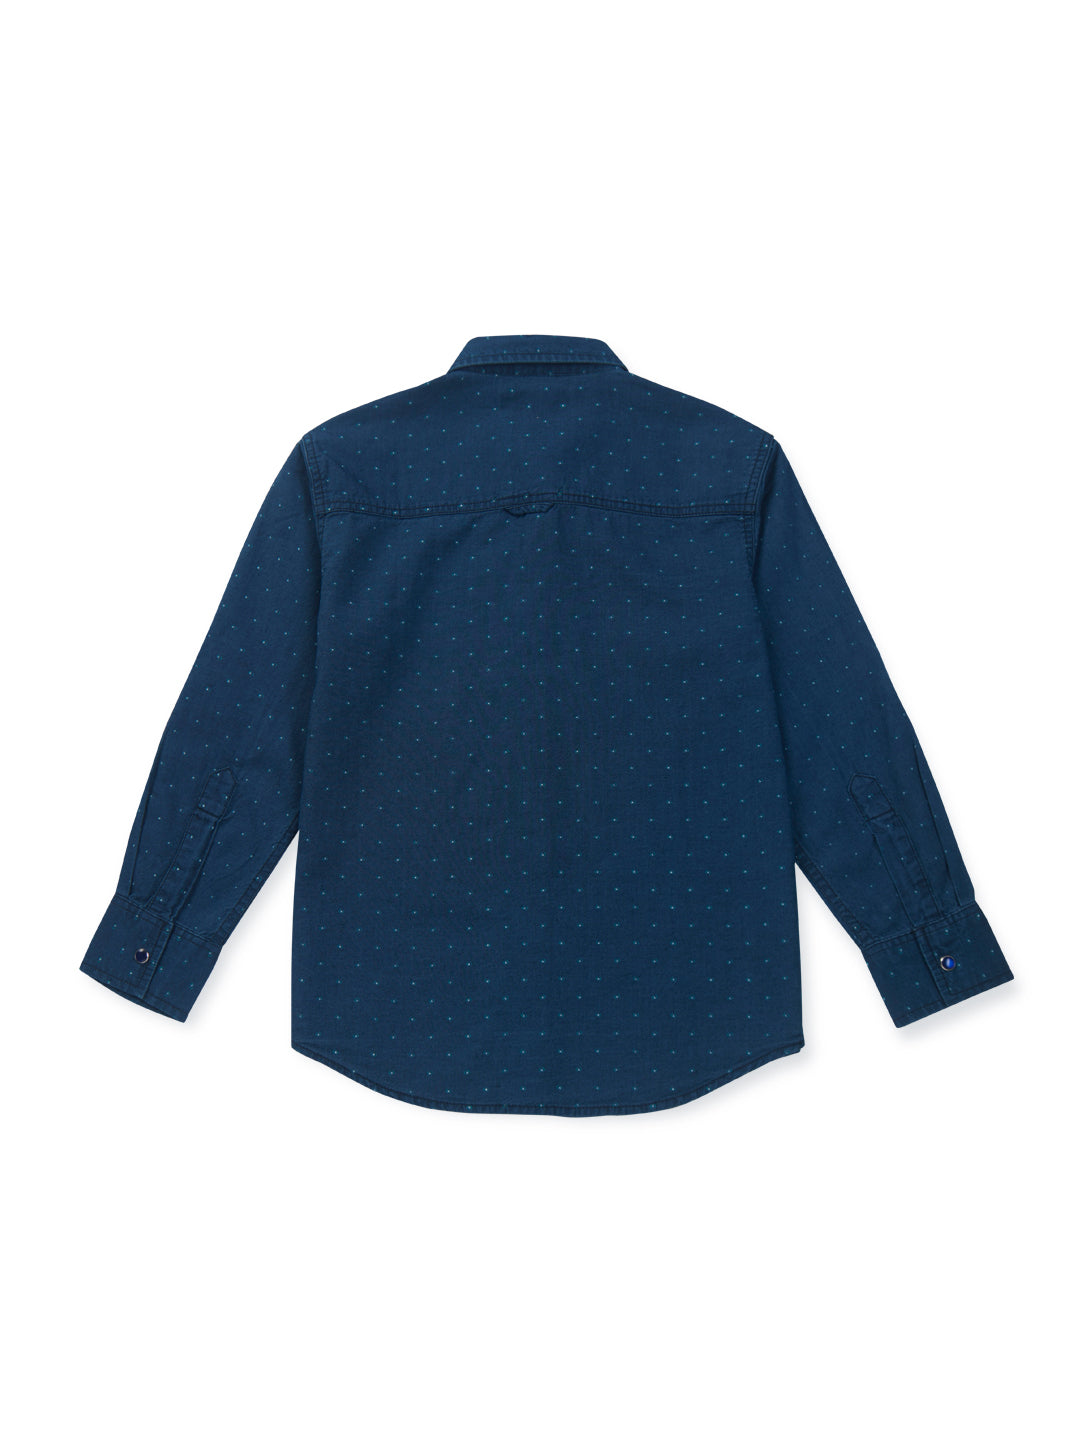 Boys Navy Blue Printed knits Shirt